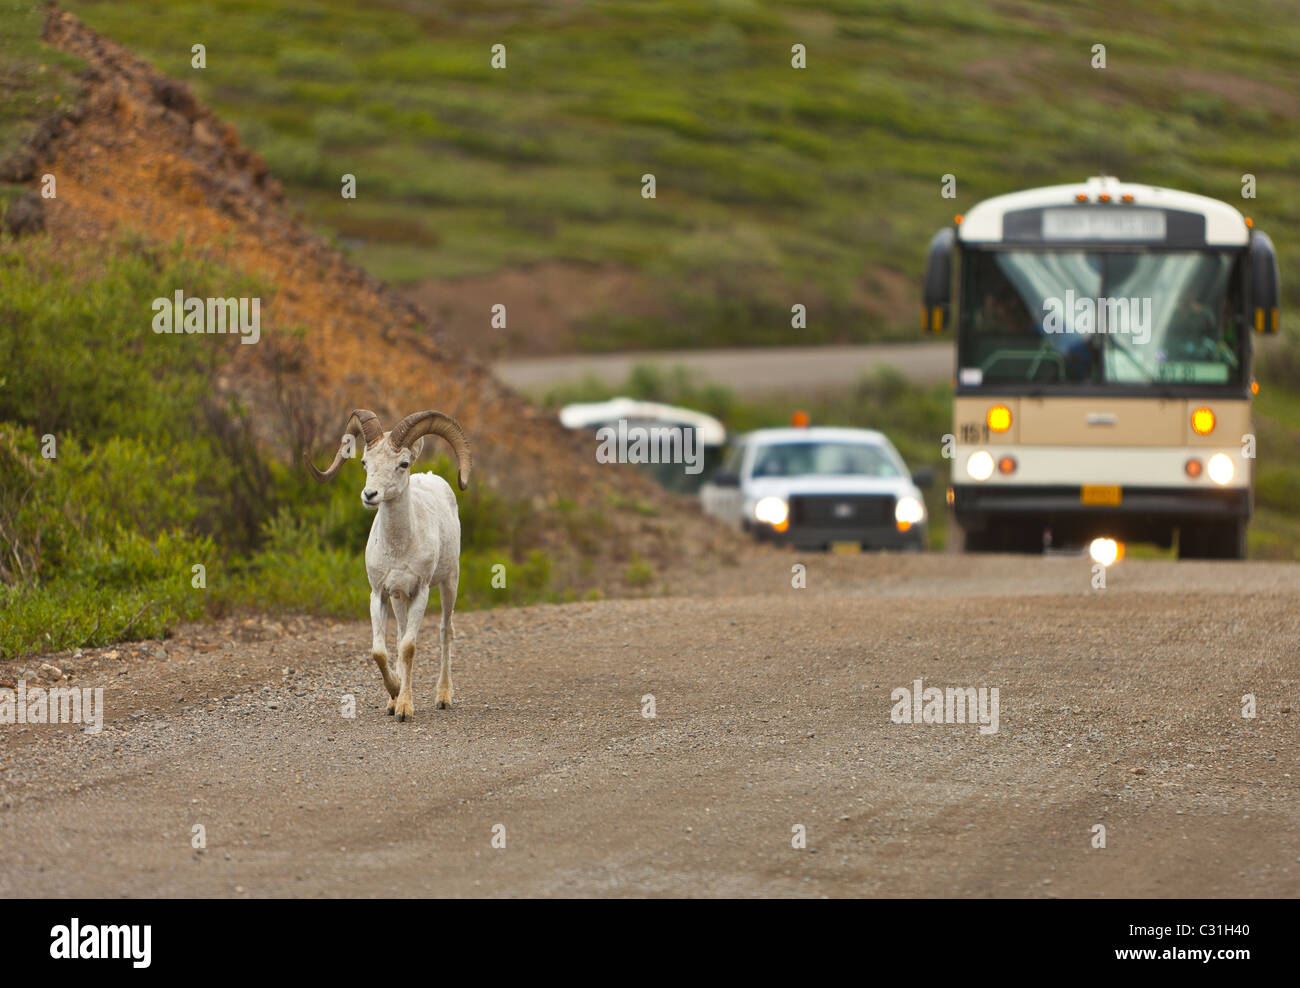 ALASKA, STATI UNITI D'AMERICA - Dallâ pecora su strada con autobus, nel Parco Nazionale di Denali. Foto Stock